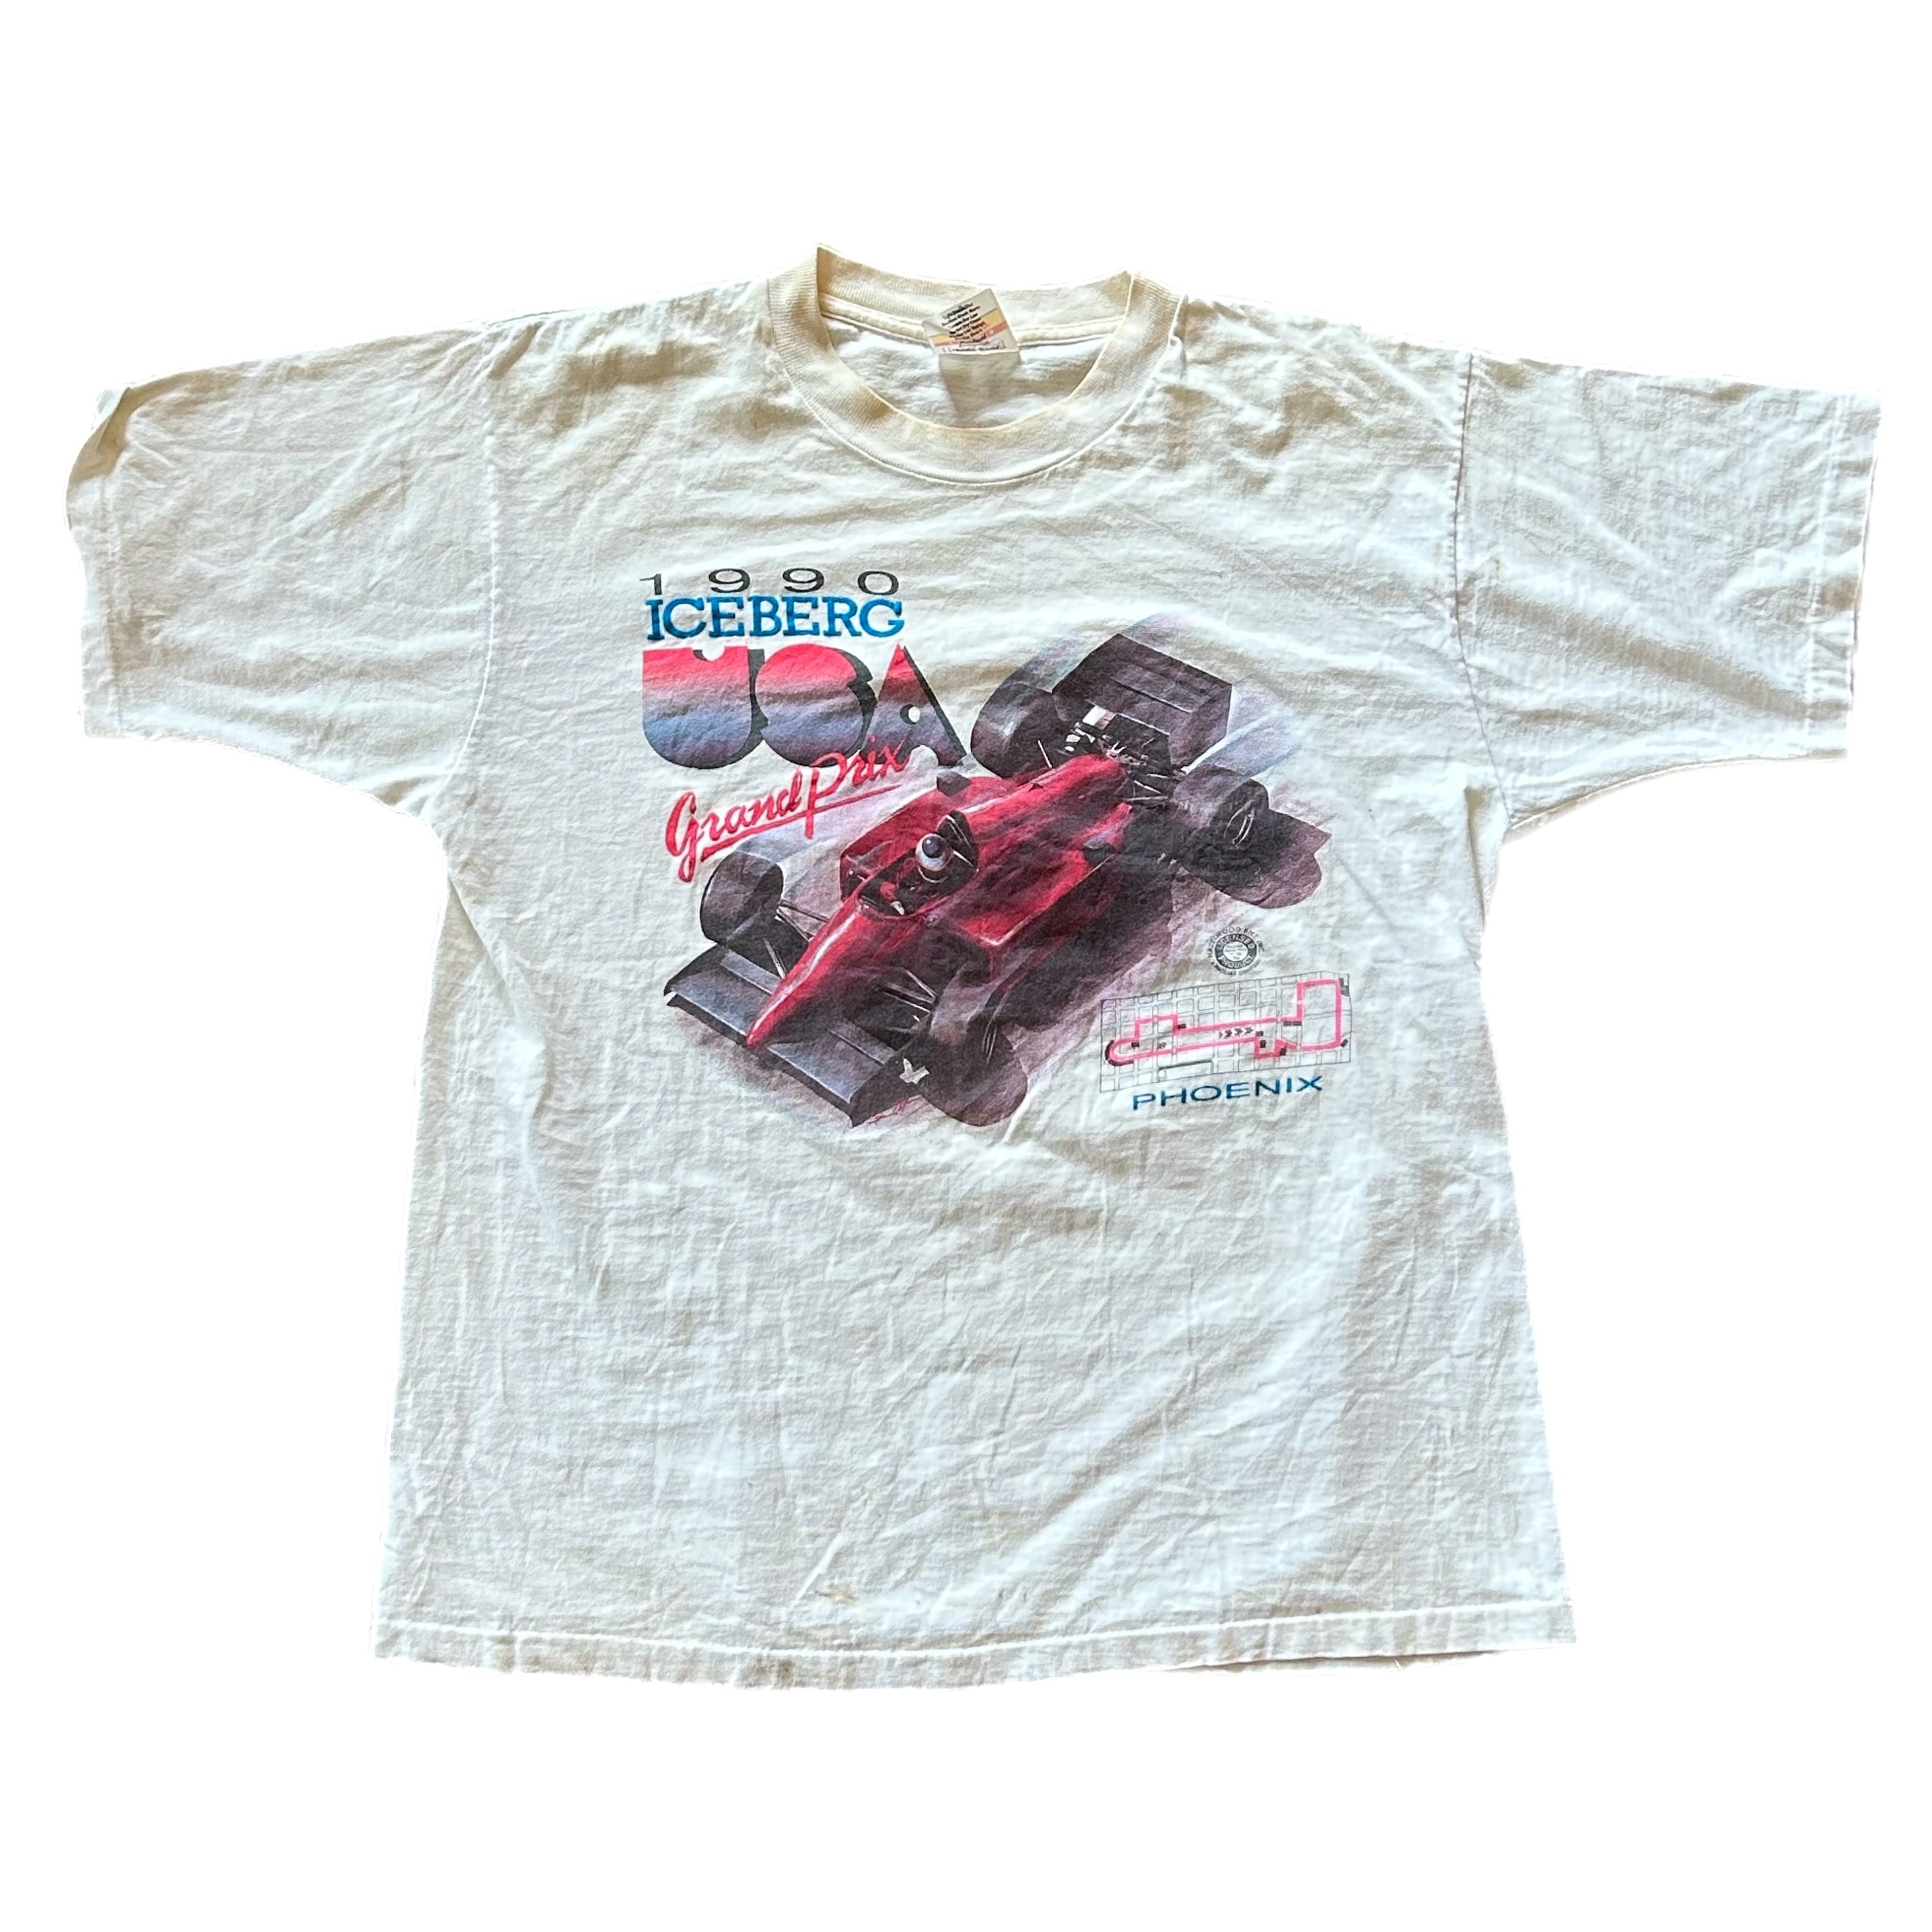 Vintage 1990 Formula 1 Tee